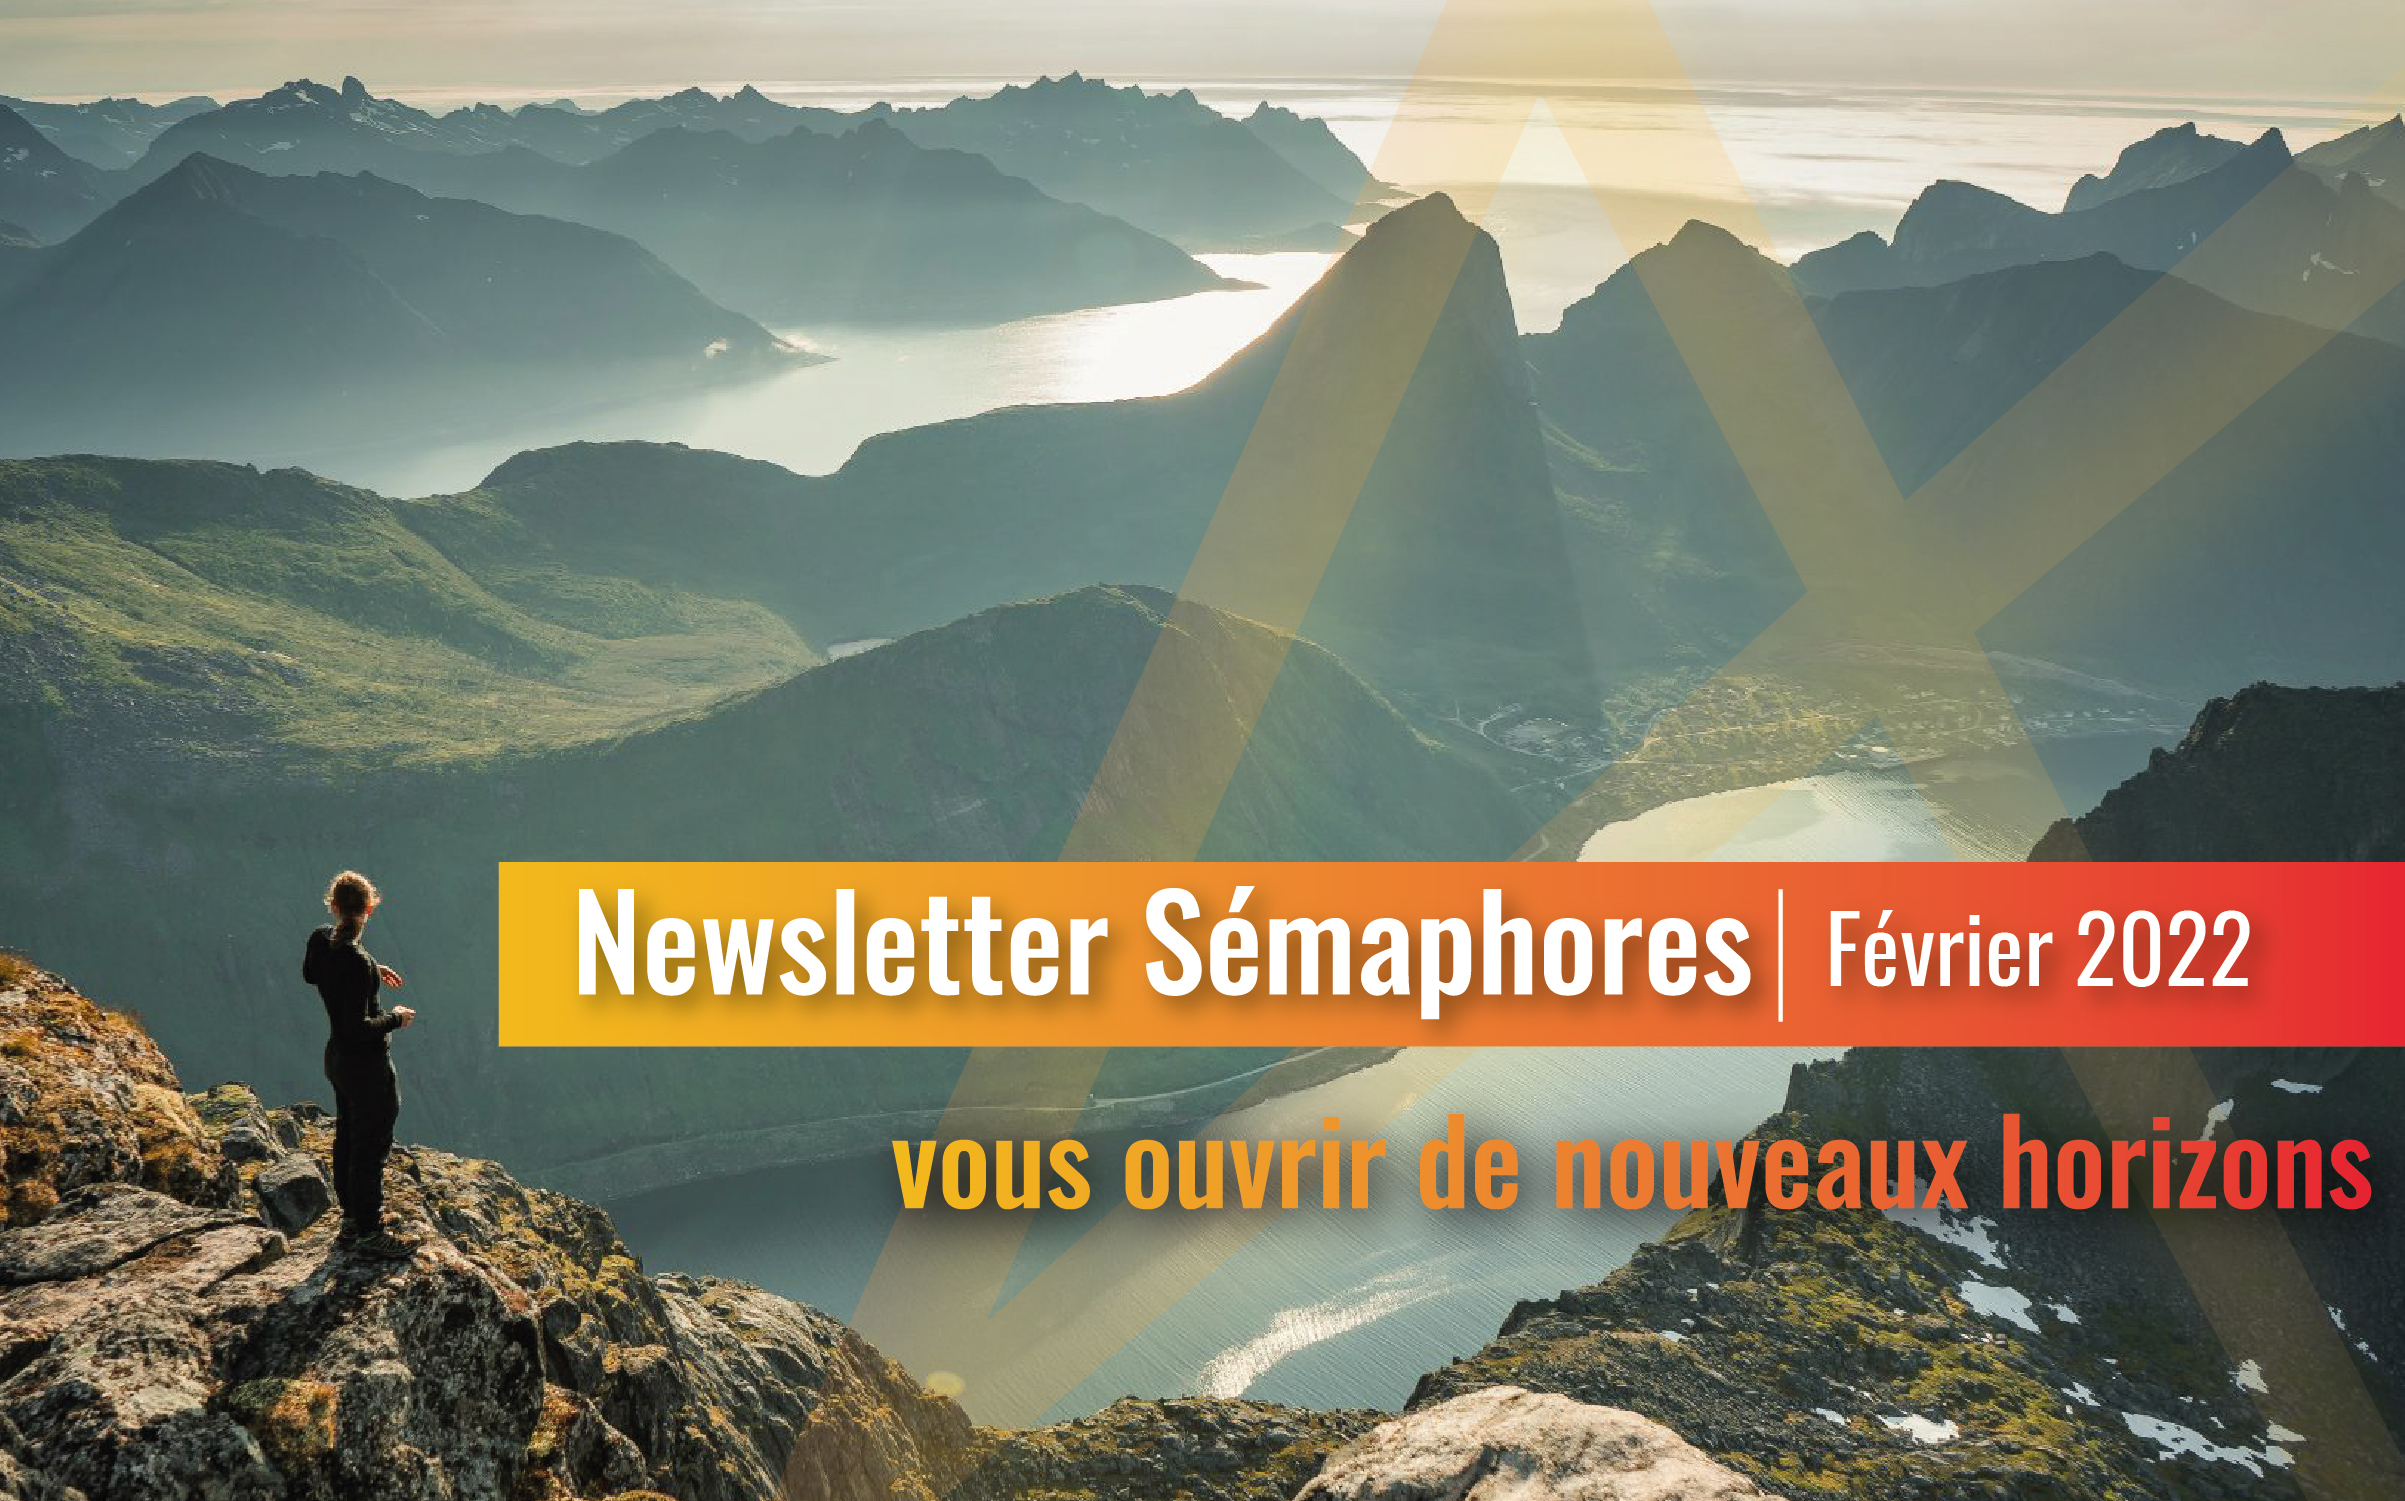 La newsletter Sémaphores - Février 2022